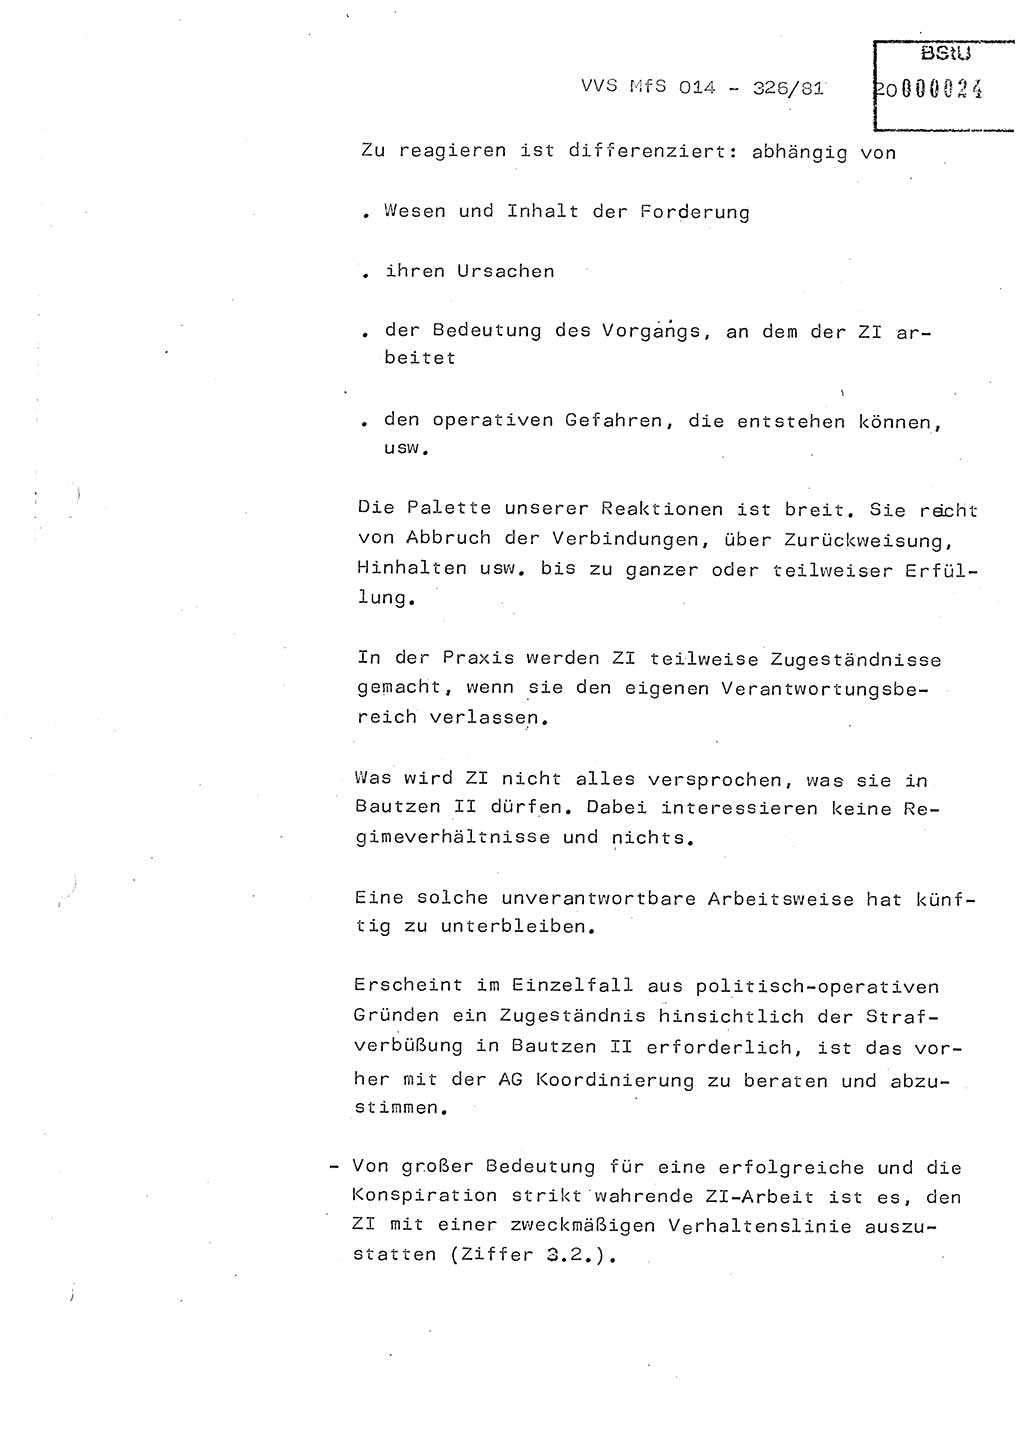 Thesen zum Einführungsvortrag für die Schulung zur Richtlinie Nr. 2/81 [zur Arbeit mit Zelleninformatoren (ZI)] des Genossen Minister (Generaloberst Erich Mielke), Ministerium für Staatssicherheit (MfS) [Deutsche Demokratische Republik (DDR)], Hauptabteilung (HA) Ⅸ, Vertrauliche Verschlußsache (VVS) 014-326/81, Berlin 1981, Seite 20 (Th. Sch. RL 2/81 MfS DDR HA Ⅸ VVS 014-326/81 1981, S. 20)